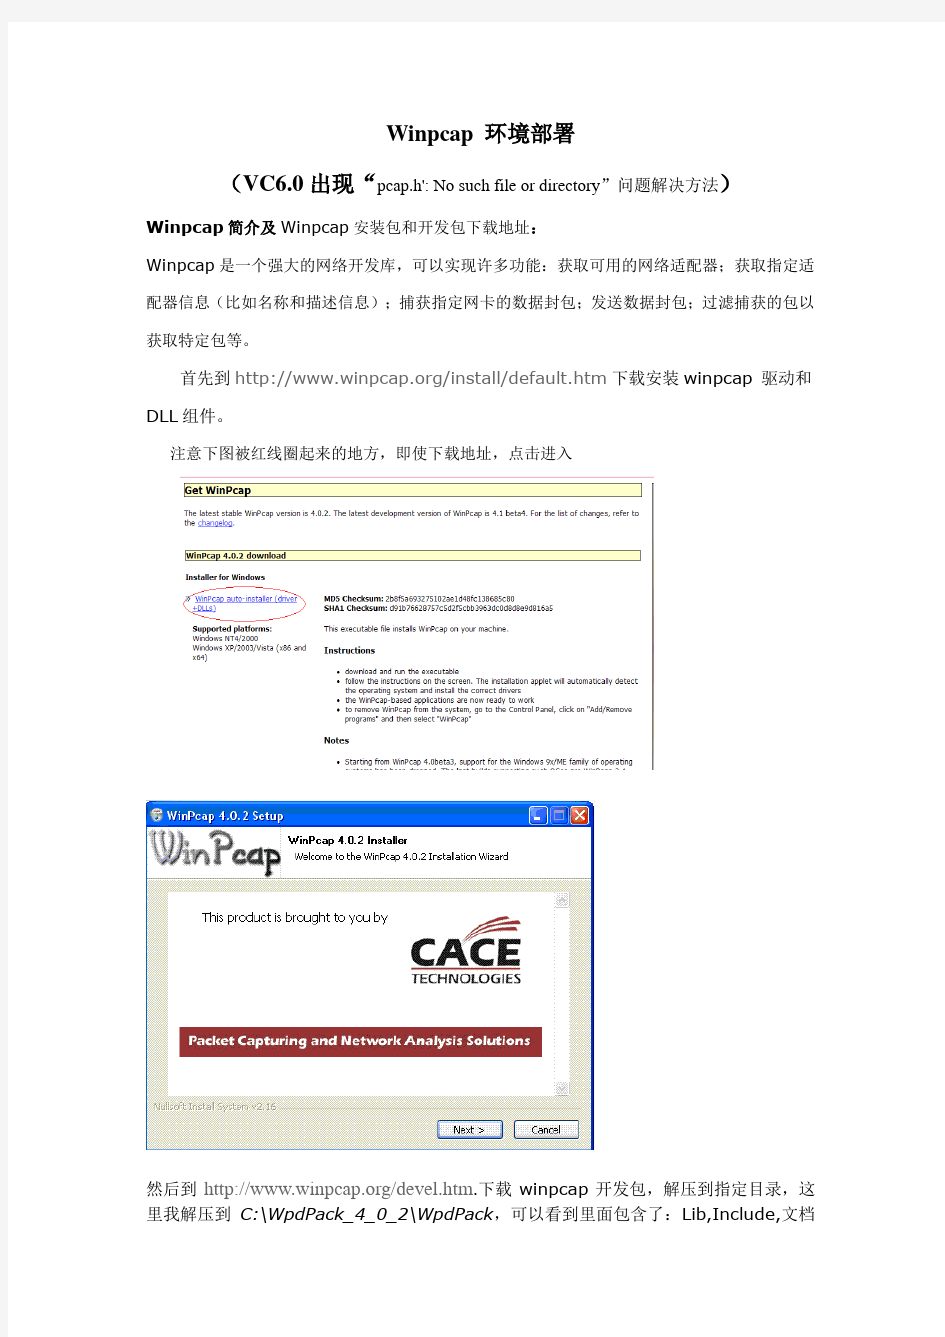 winpcap环境部署(VC6.0出现找不到“pcap.h_'”文件解决方法)